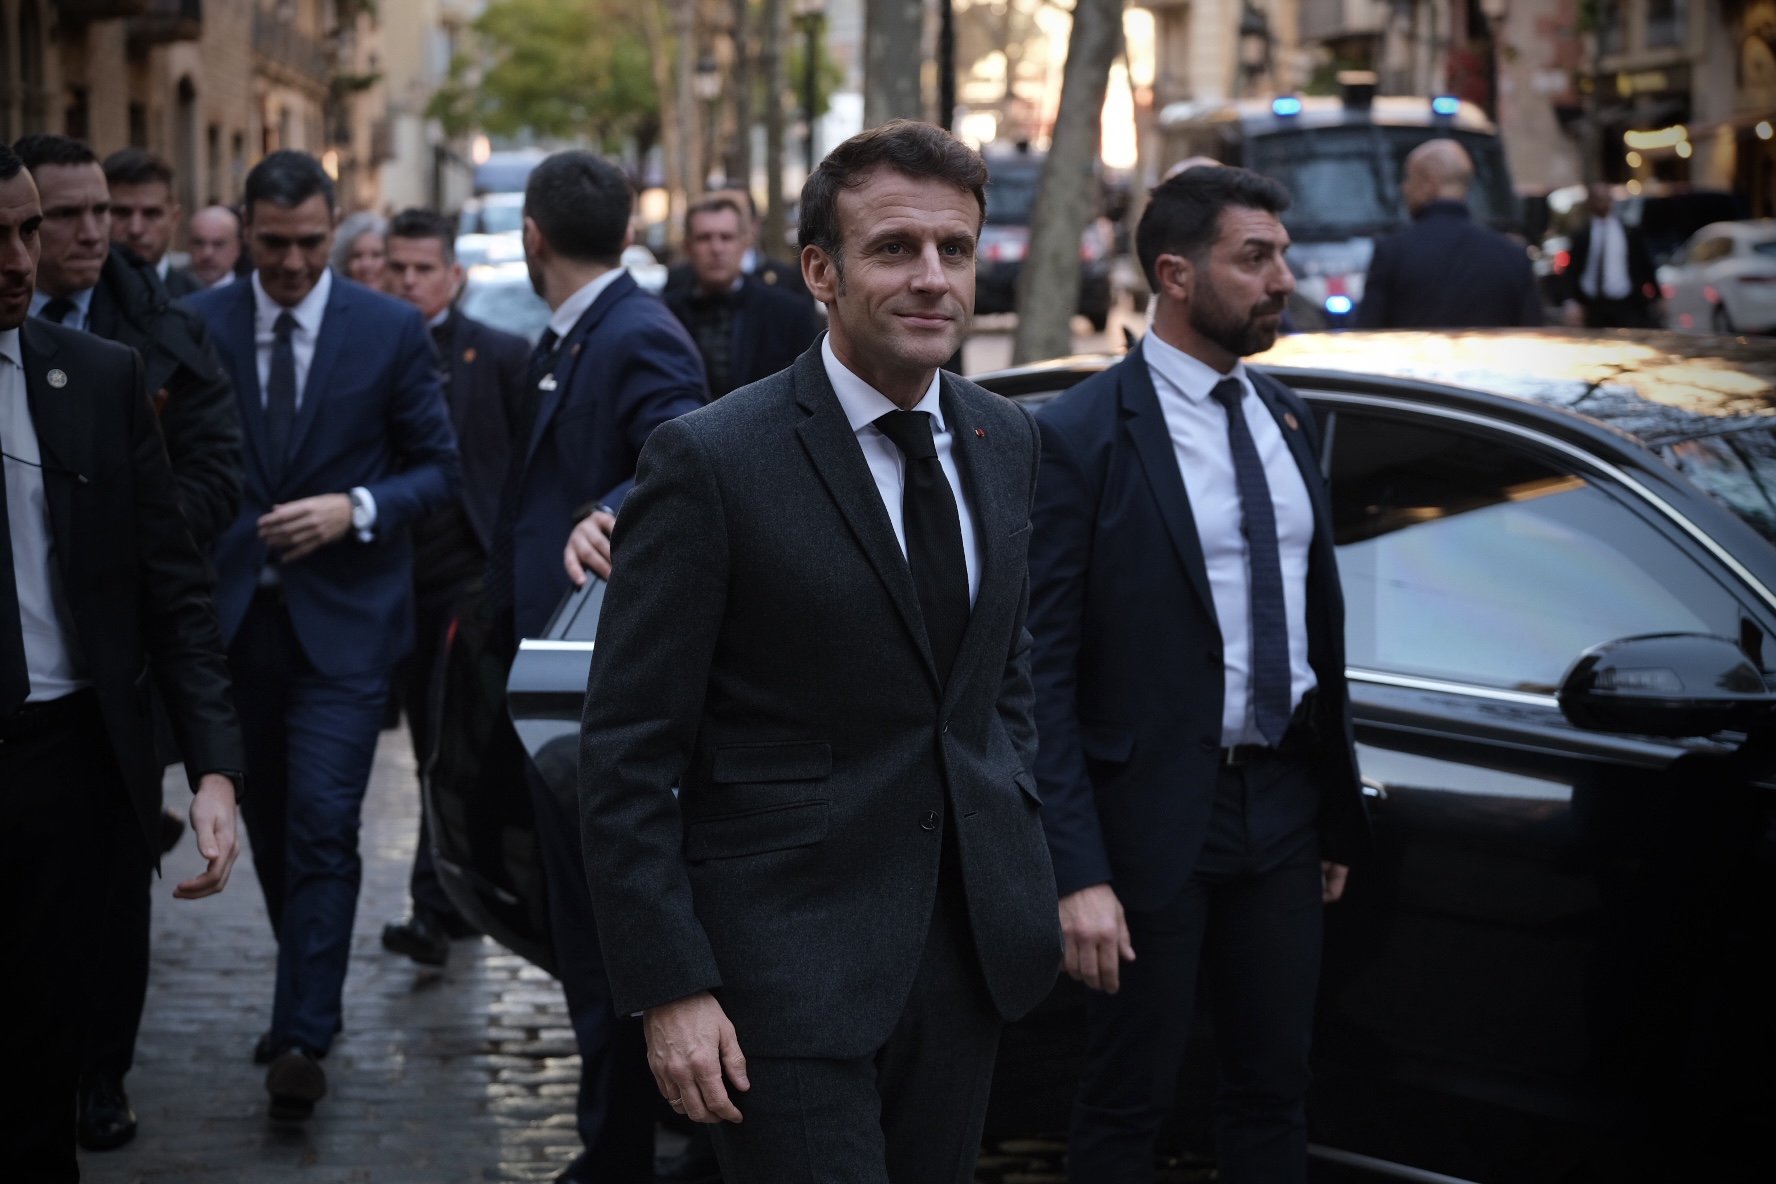 Emmanuel Macron Pedro Sanchez arriben al Museu Picasso Barcelona / Carlos Baglietto